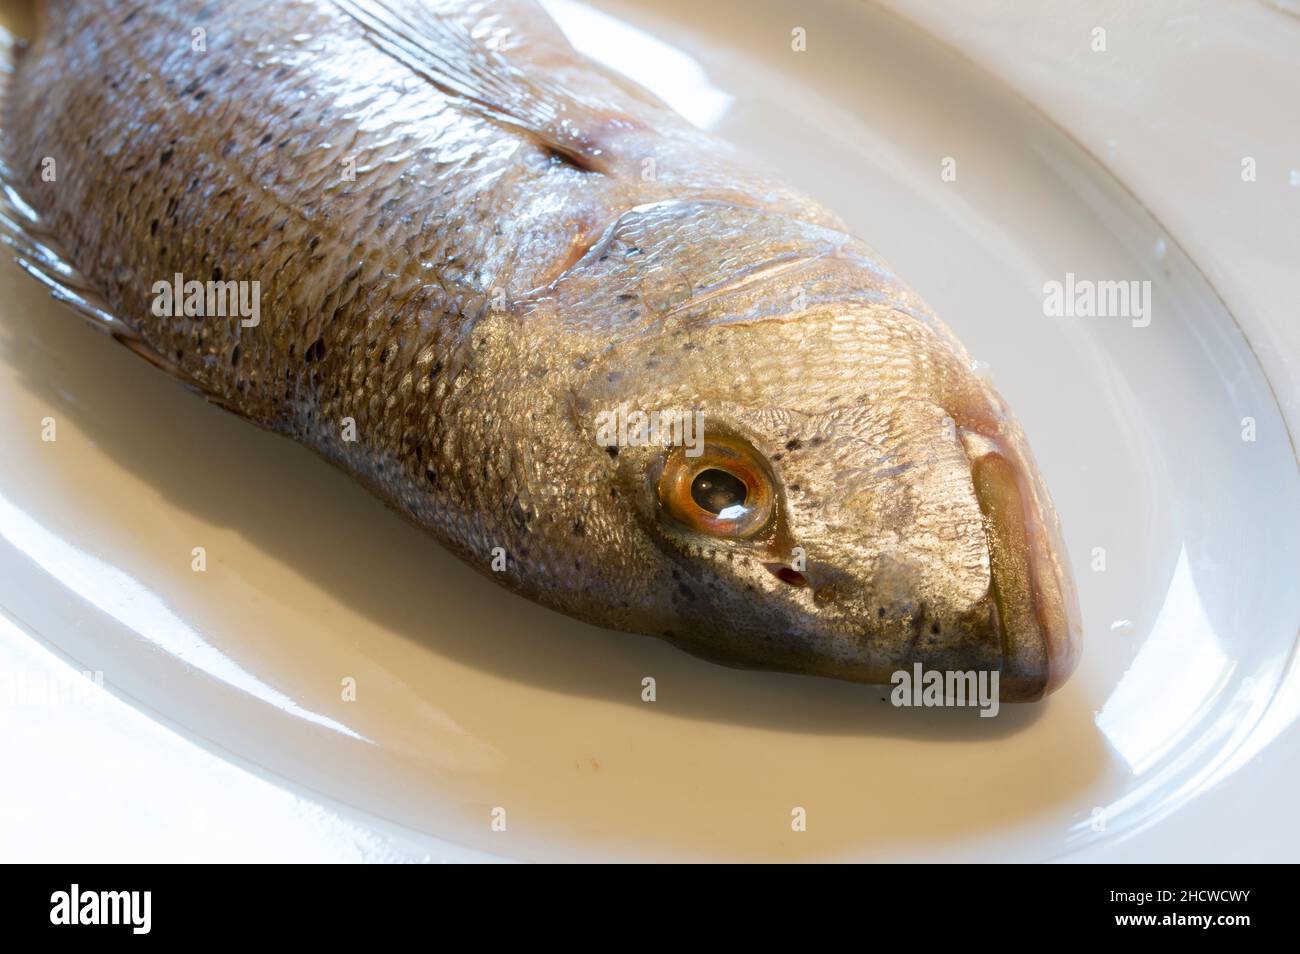 Roher Salzwasserfisch Dentex Dentex, gewöhnlicher Dentex auf einem weißen Teller, rohe Meeresfrüchte aus der Adria, dalmatinische Küche Stockfoto